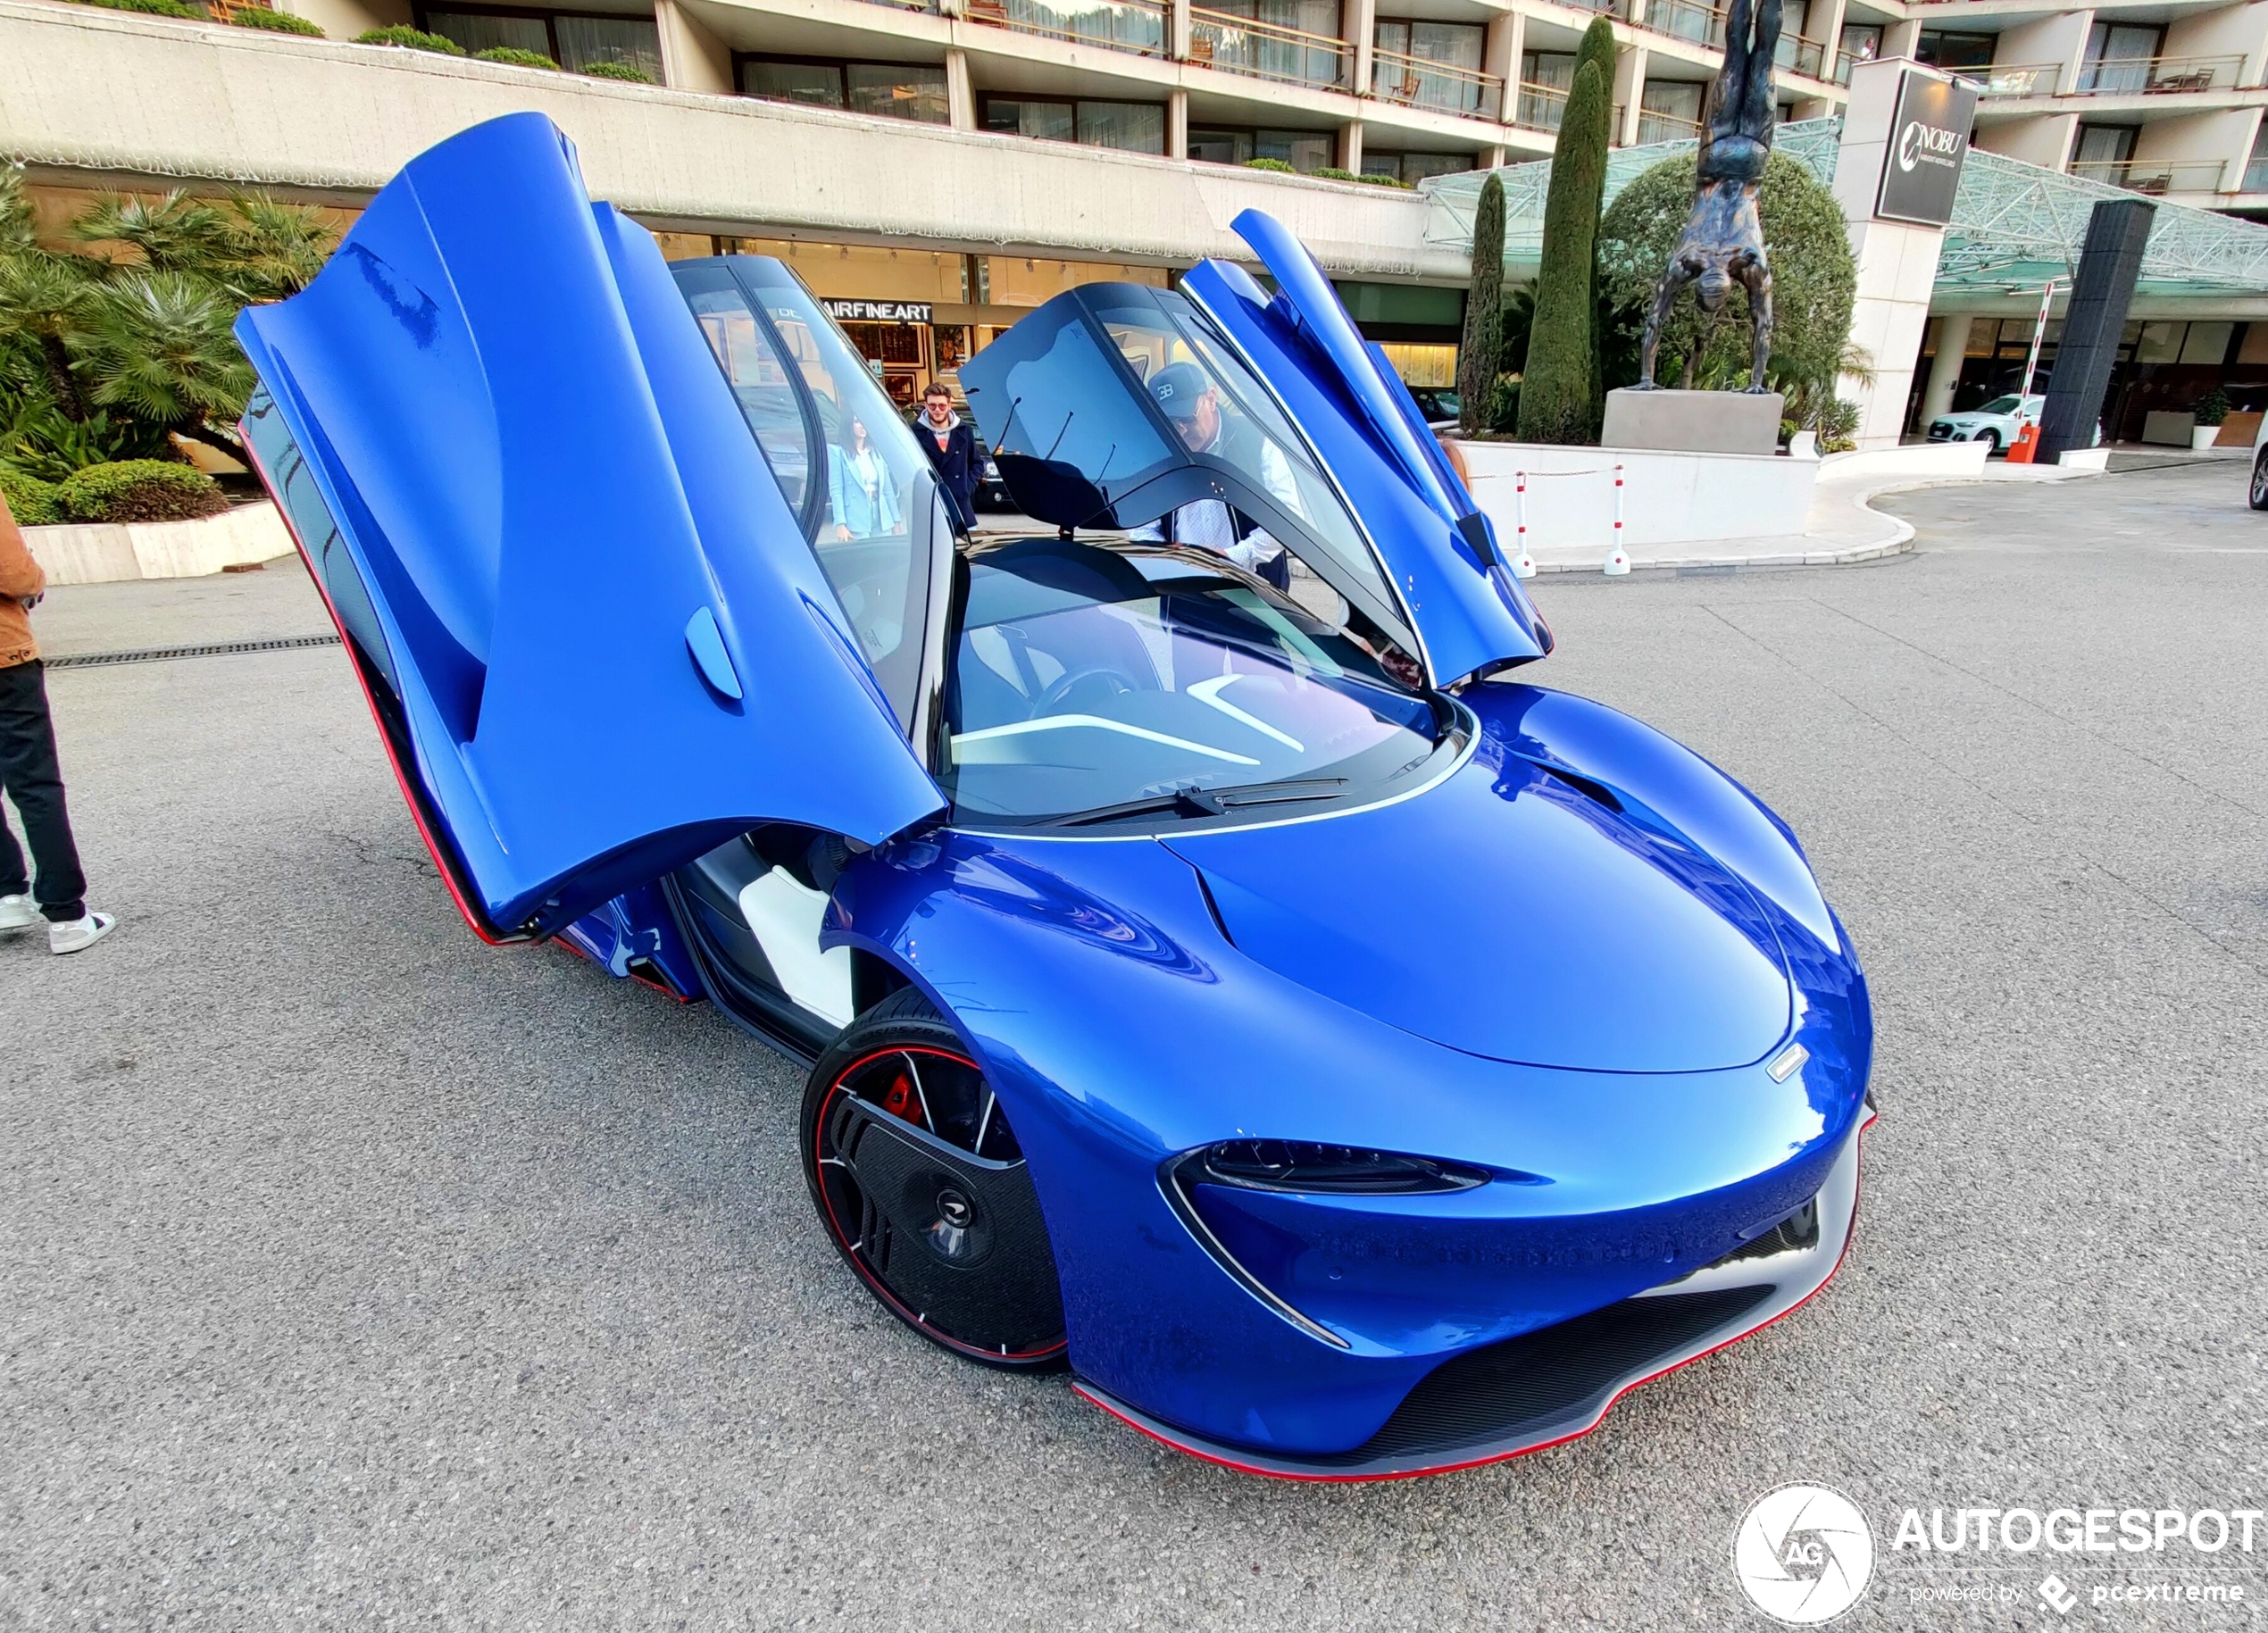 Knalblauwe McLaren Speedtail in Monaco gespot